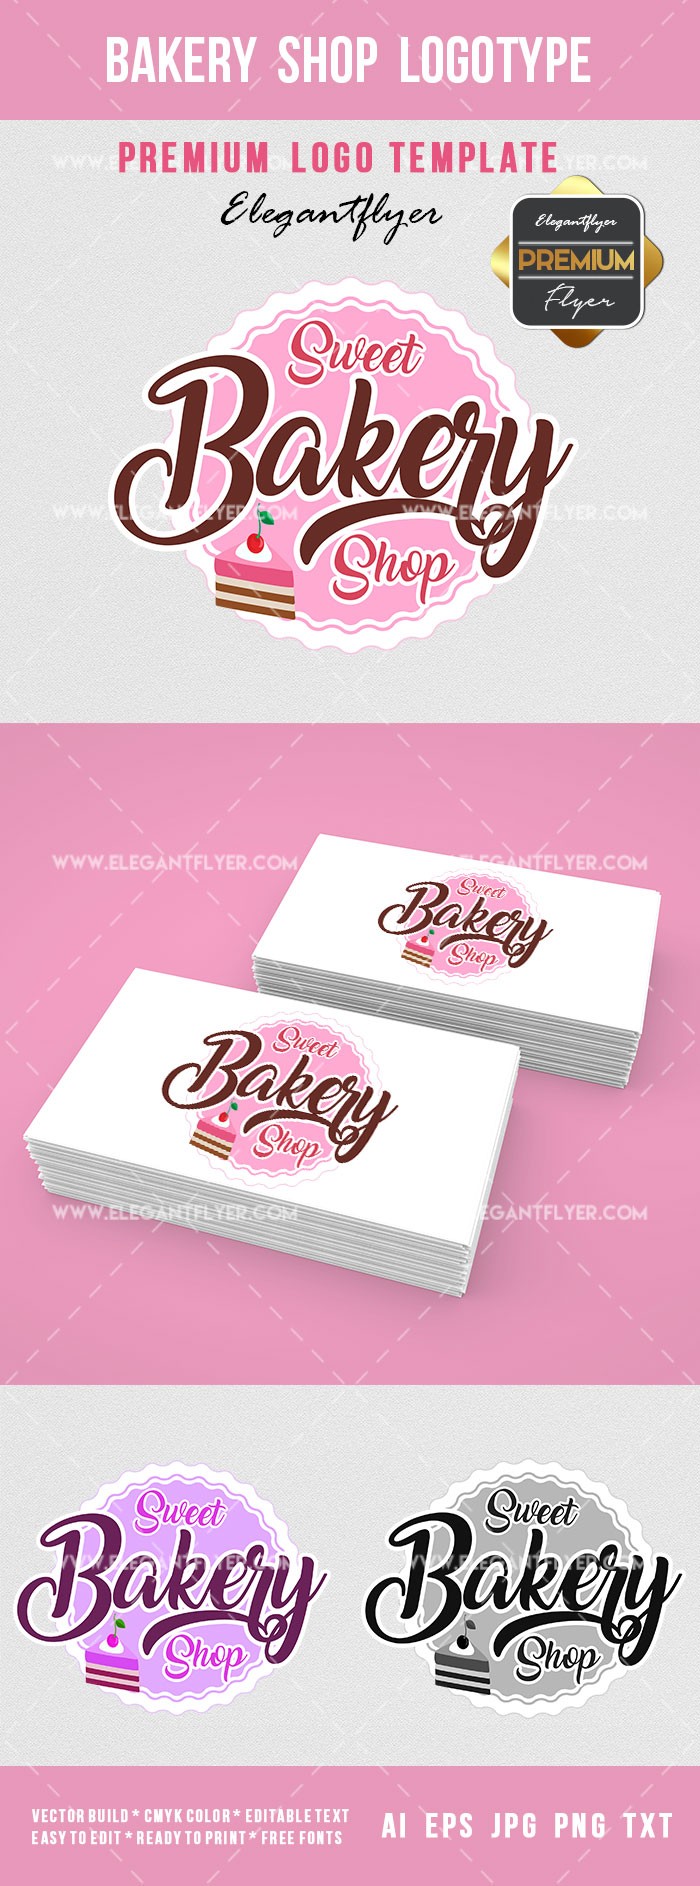 Bakery Shop Logotype by ElegantFlyer